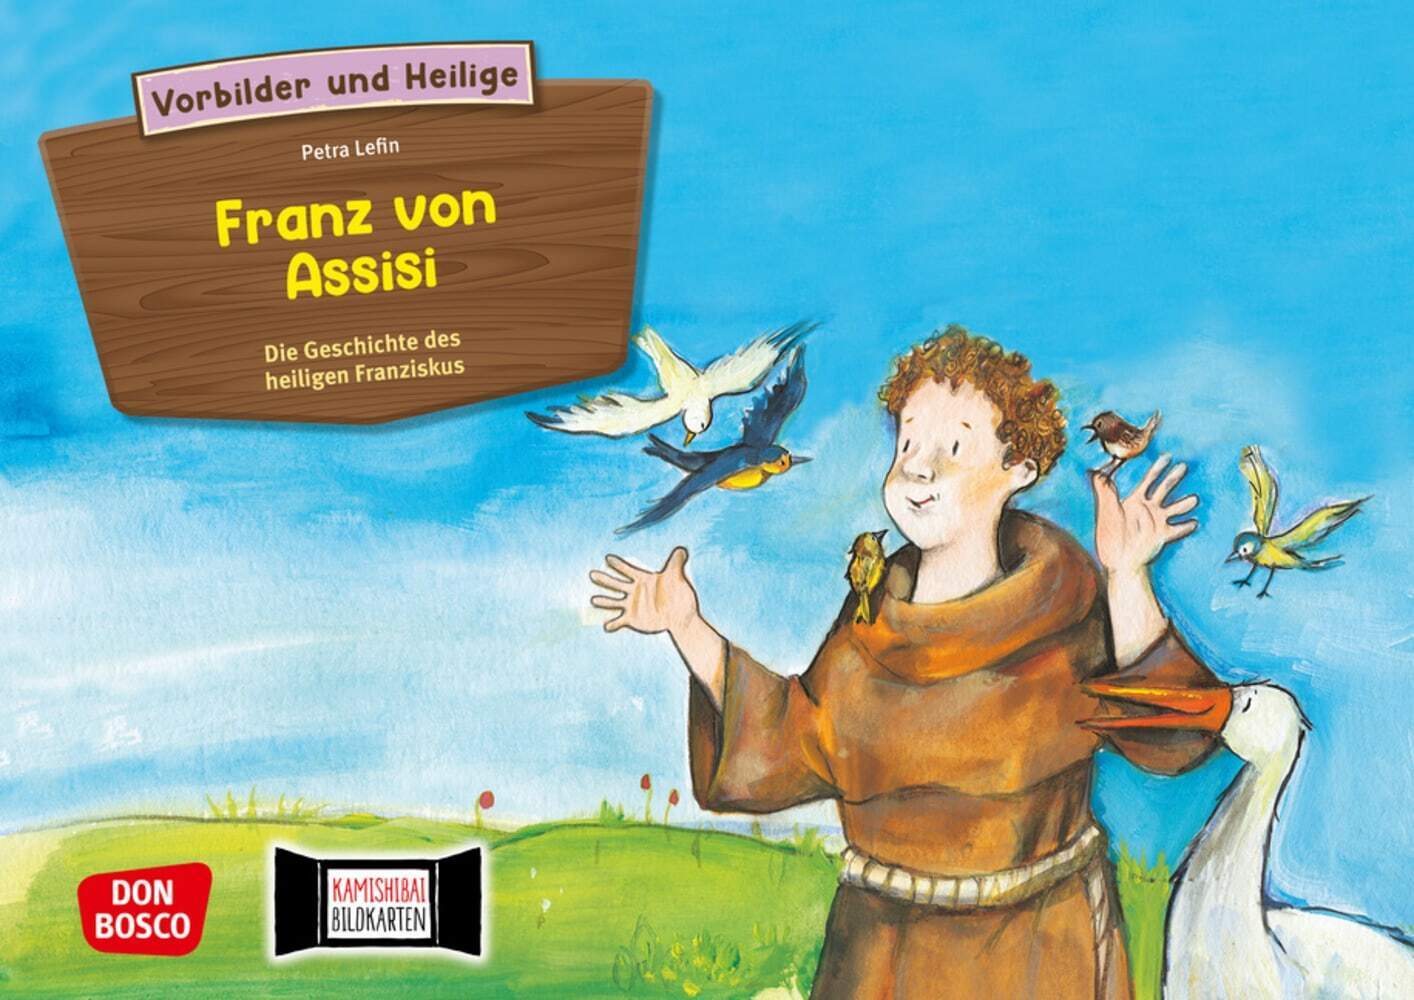 Franz von Assisi - Die Geschichte des heiligen Franziskus. Kamishibai Bildkartenset.